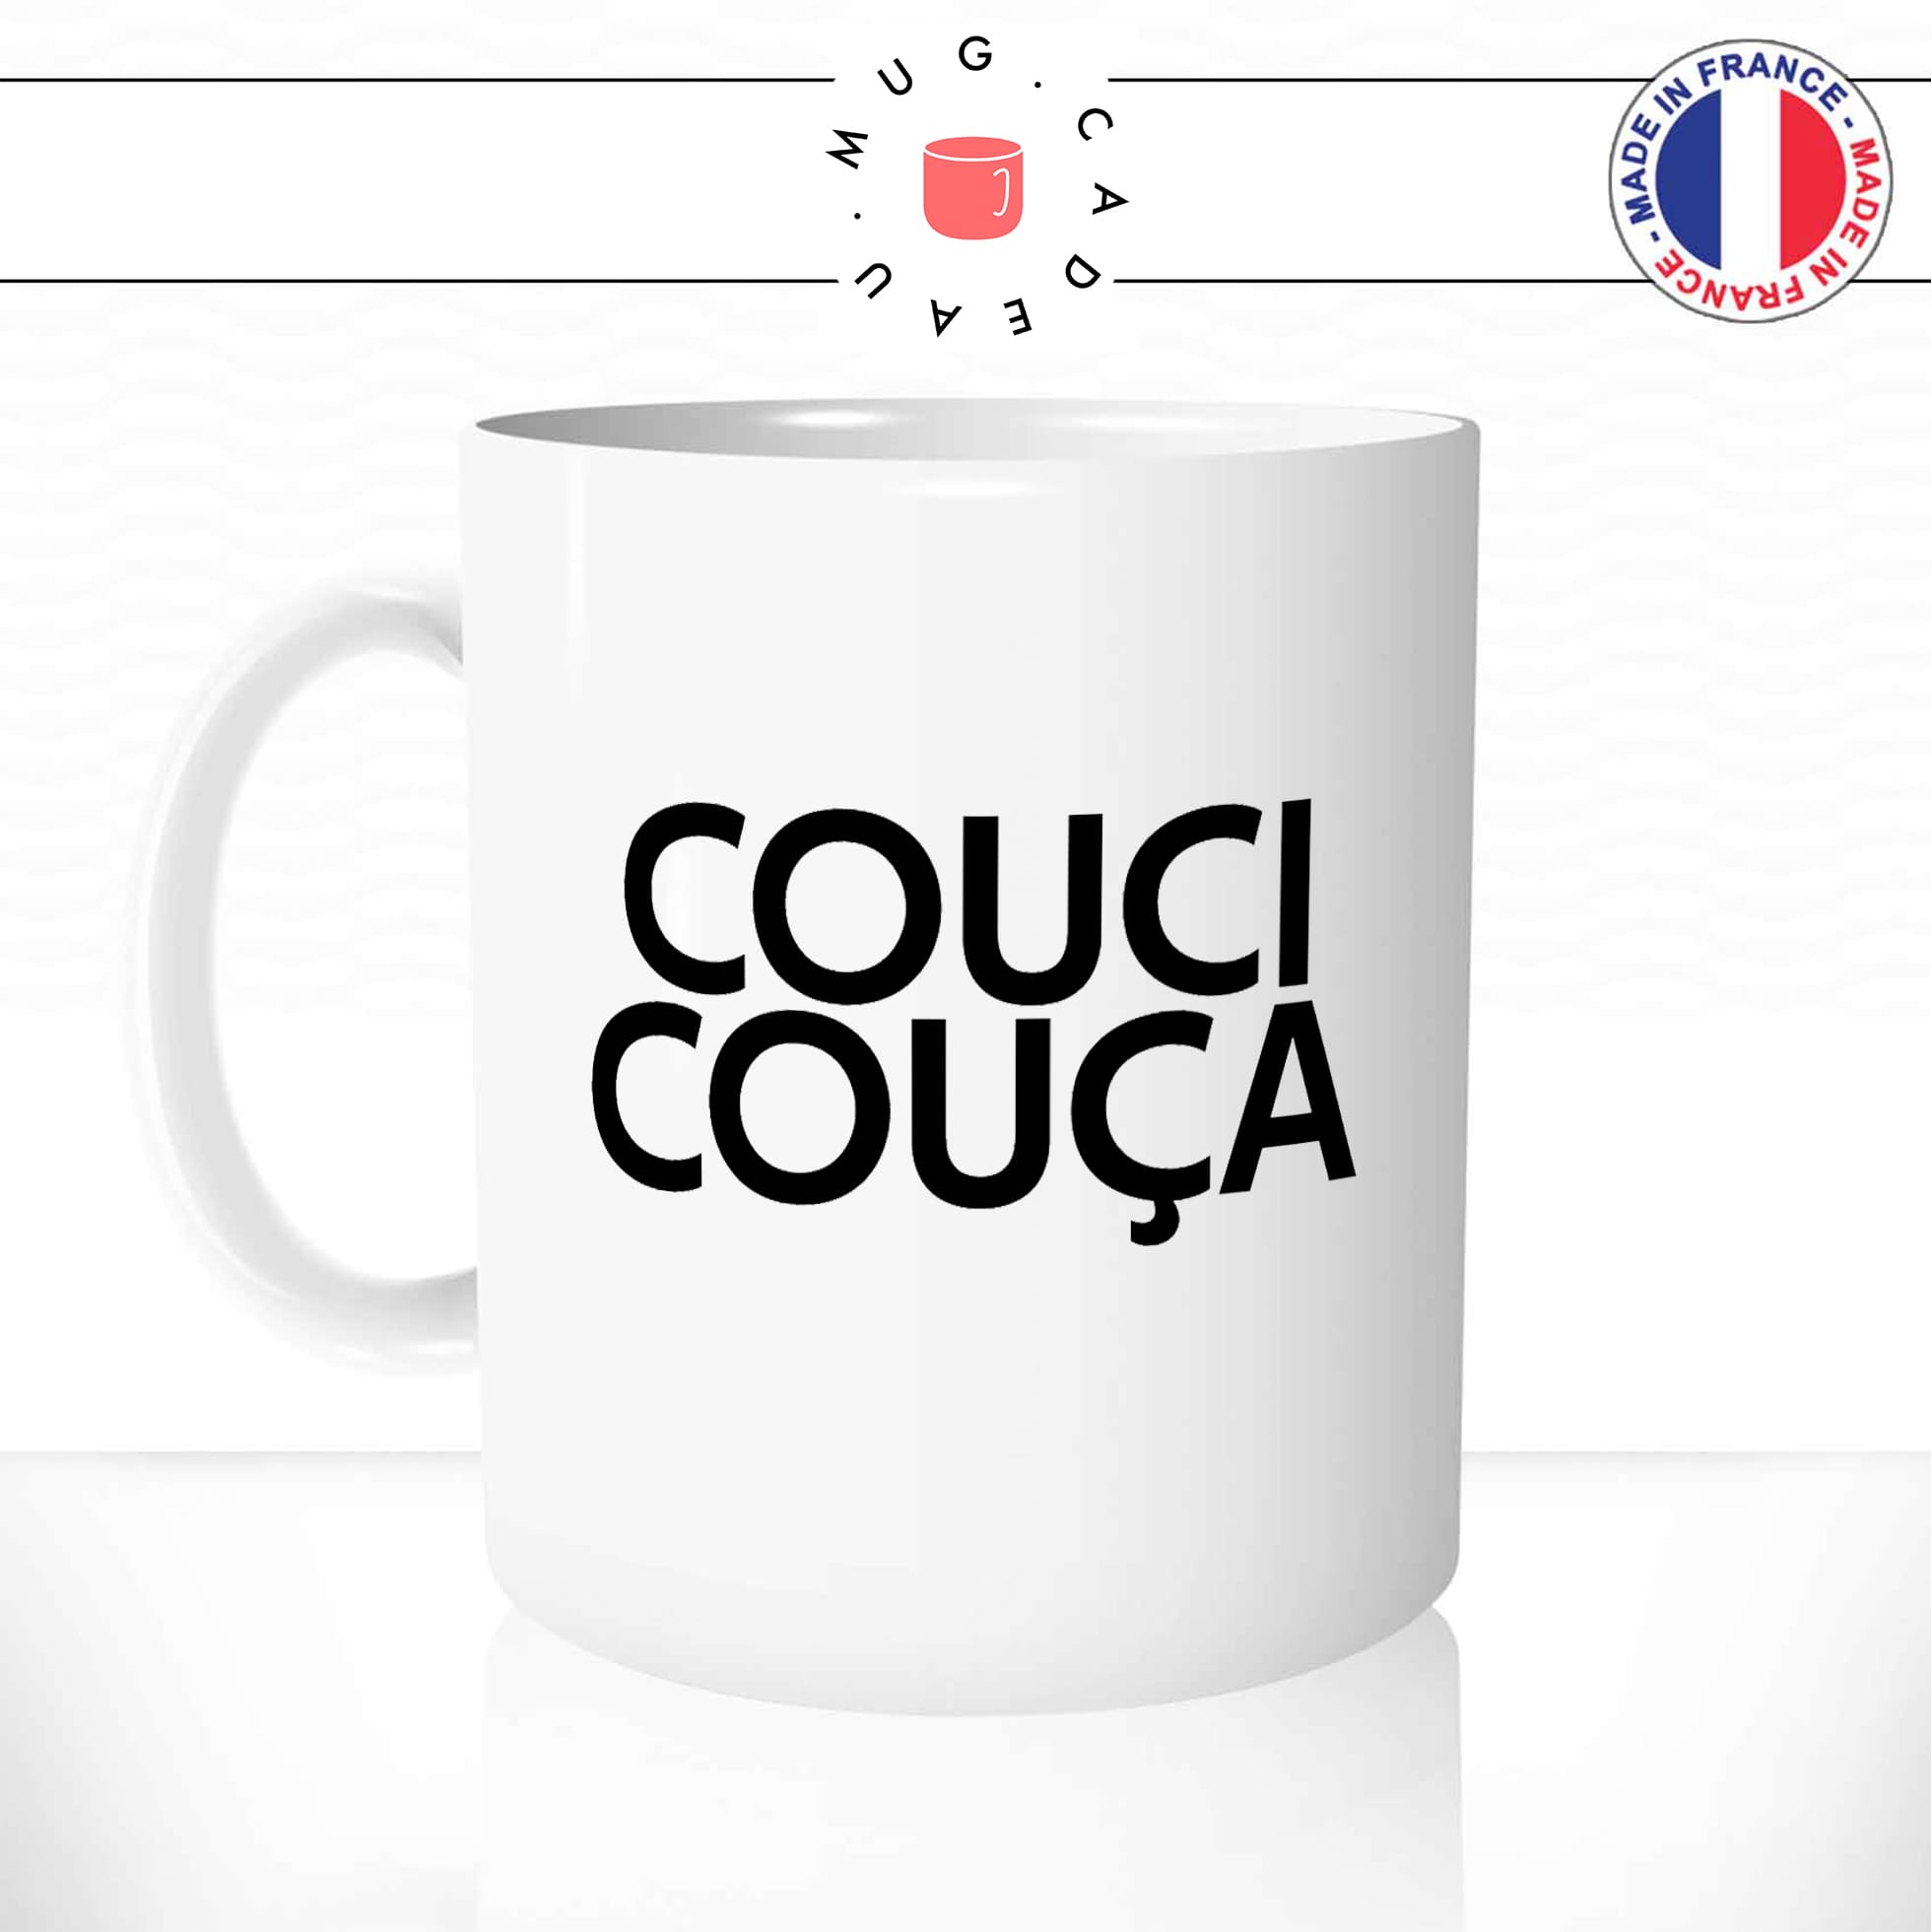 mug-tasse-blanc-couci-couca-coussi-coussa-expression-francaise-humour-fun-idée-cadeau-originale-cool